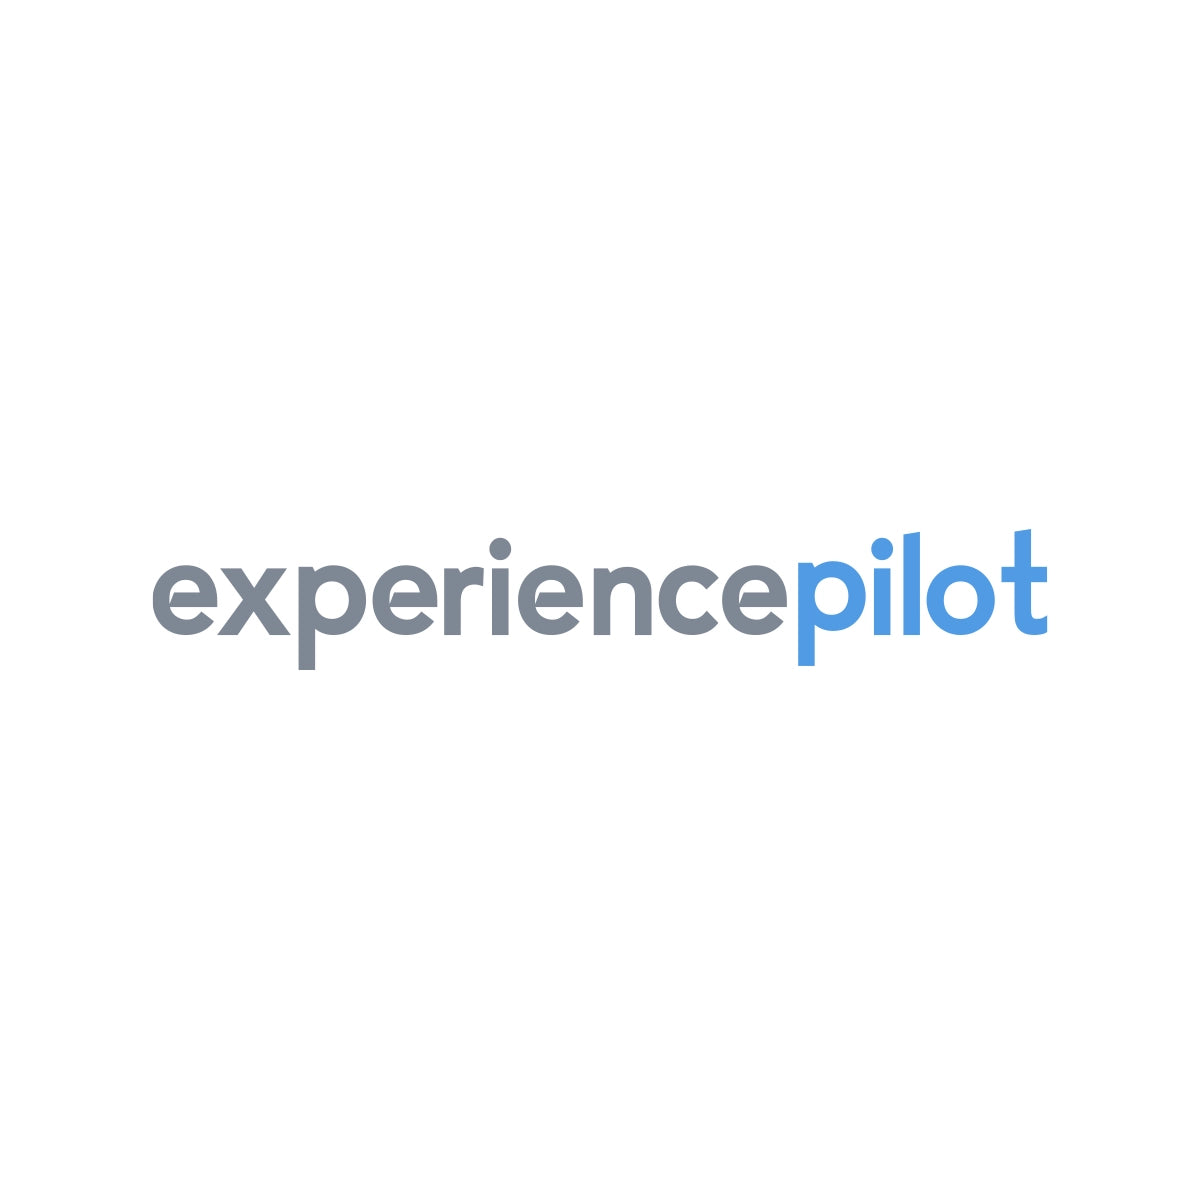 experiencepilot.com